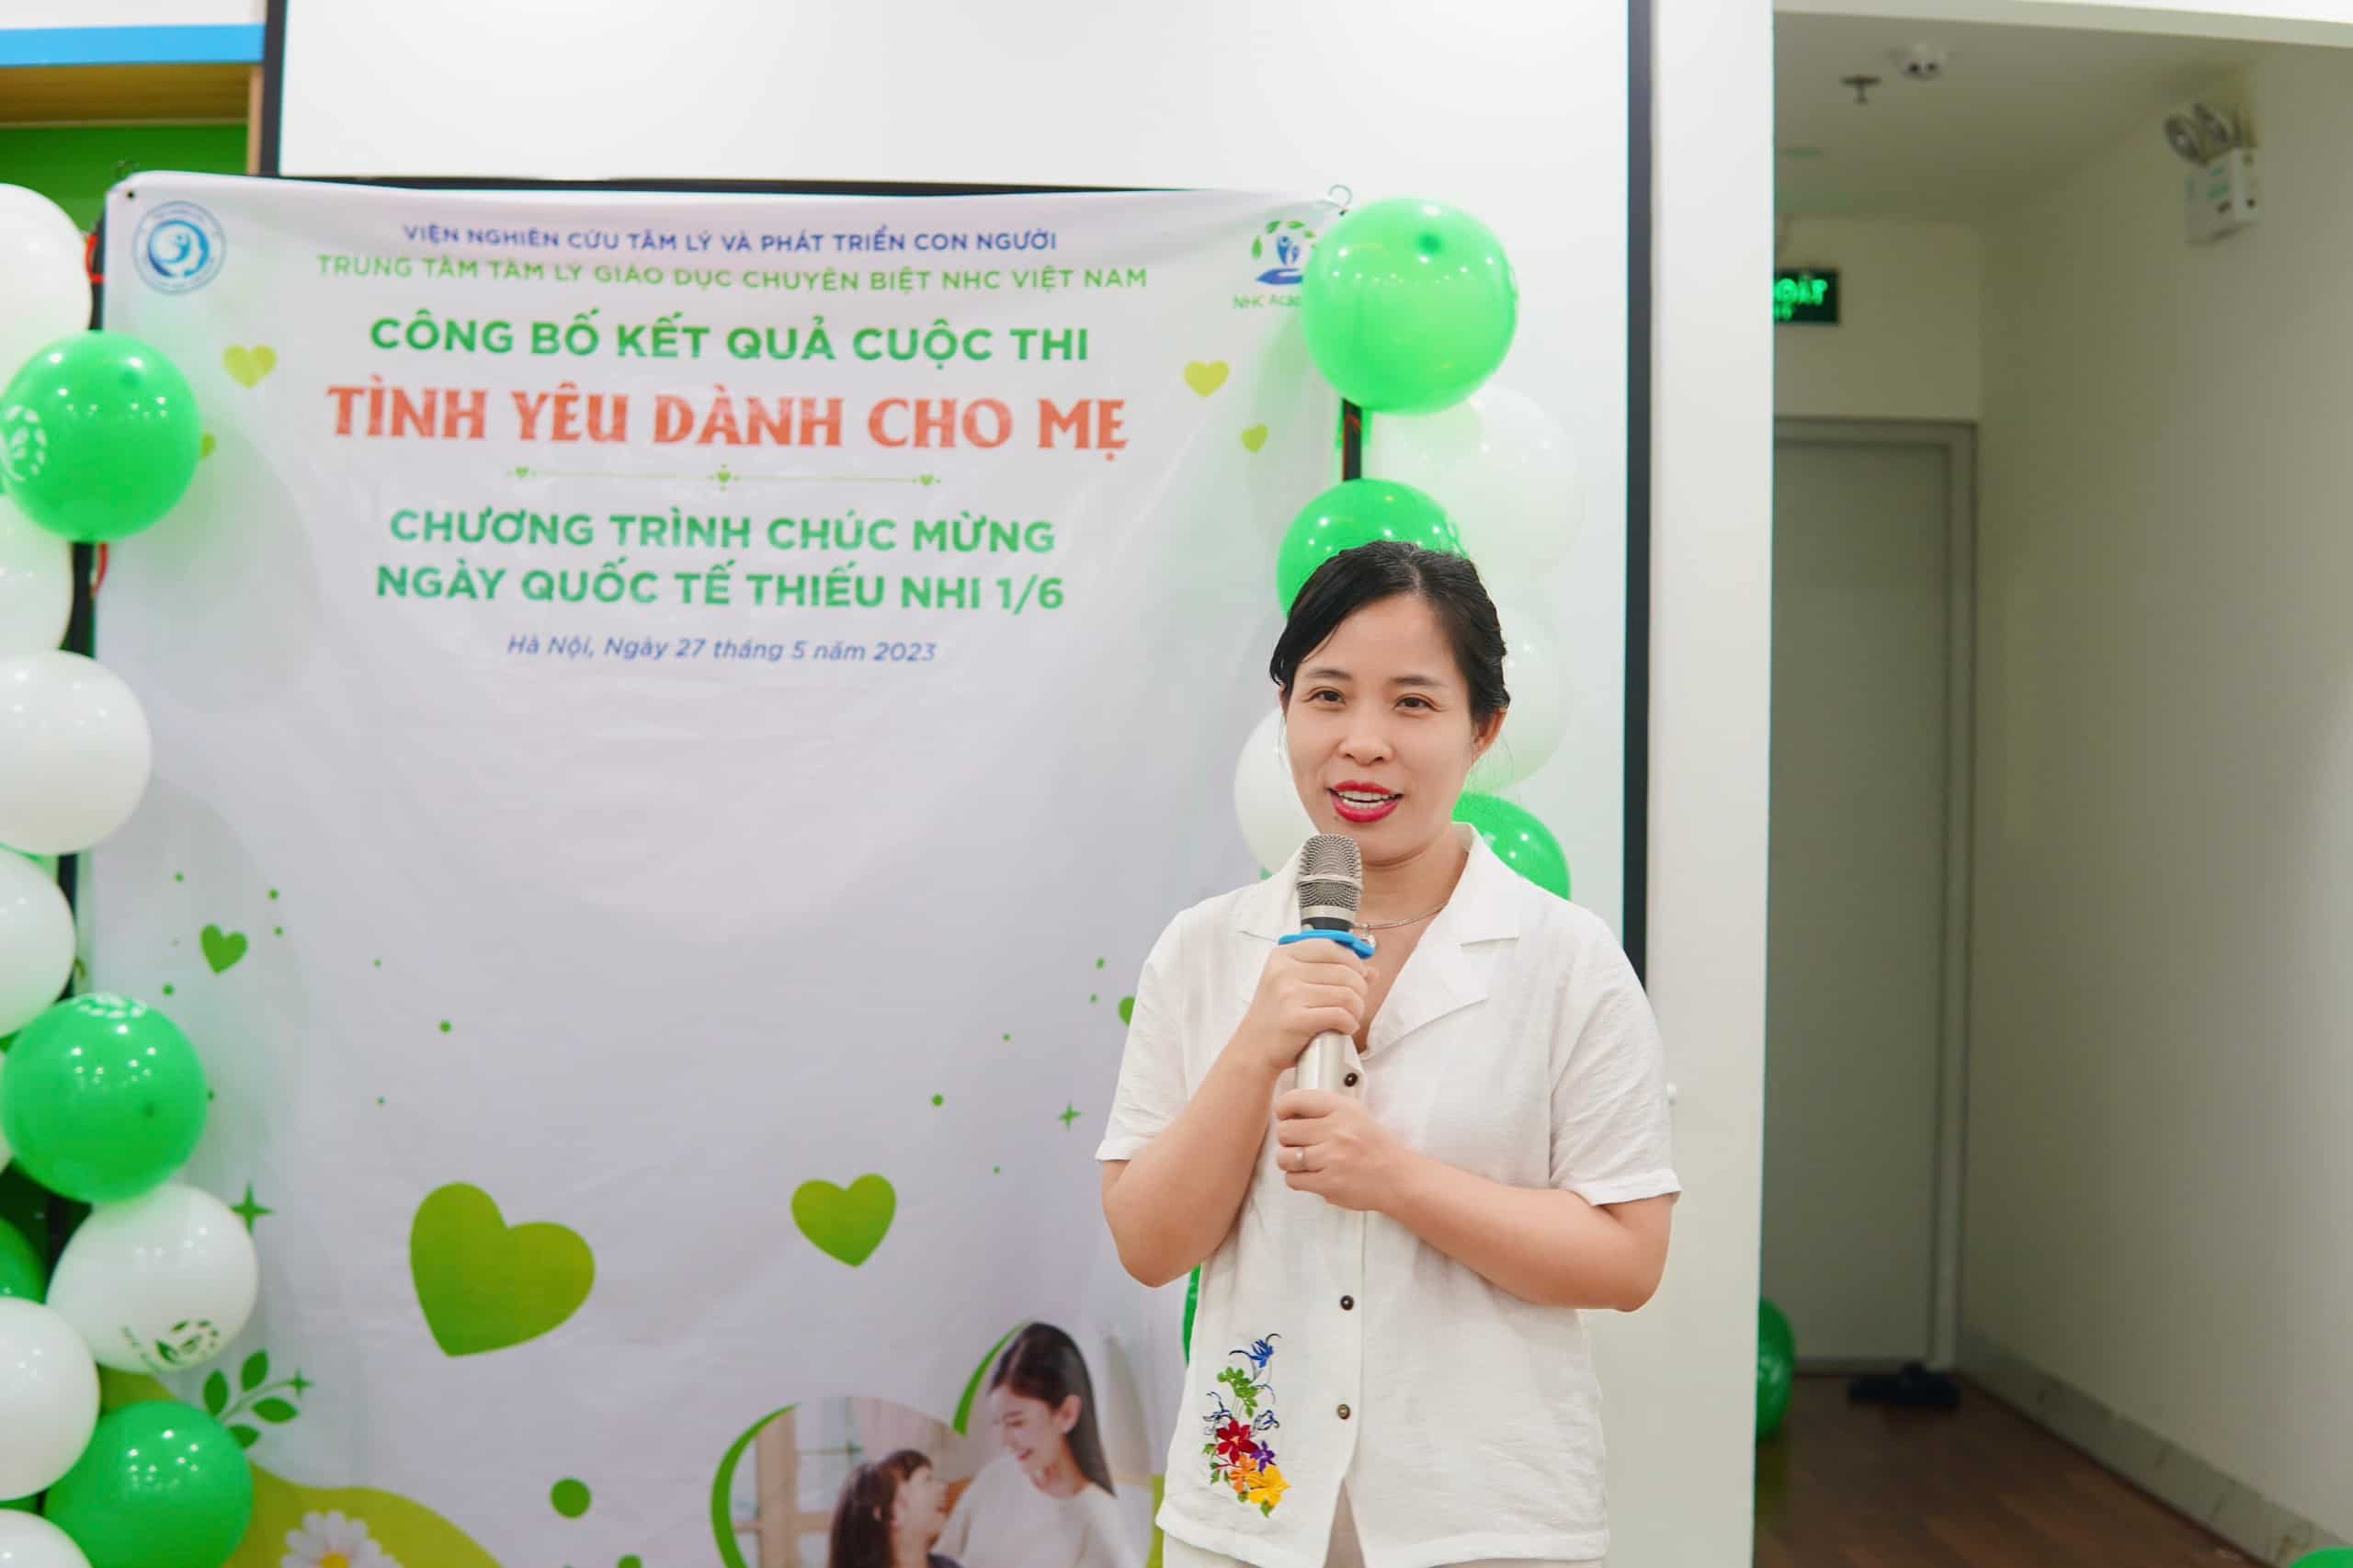 TS. Đinh Thanh Tuyến - Chủ tịch Hội đồng Viện Nghiên cứu Tâm lý và Phát triển Con người chia sẻ tại chương trình